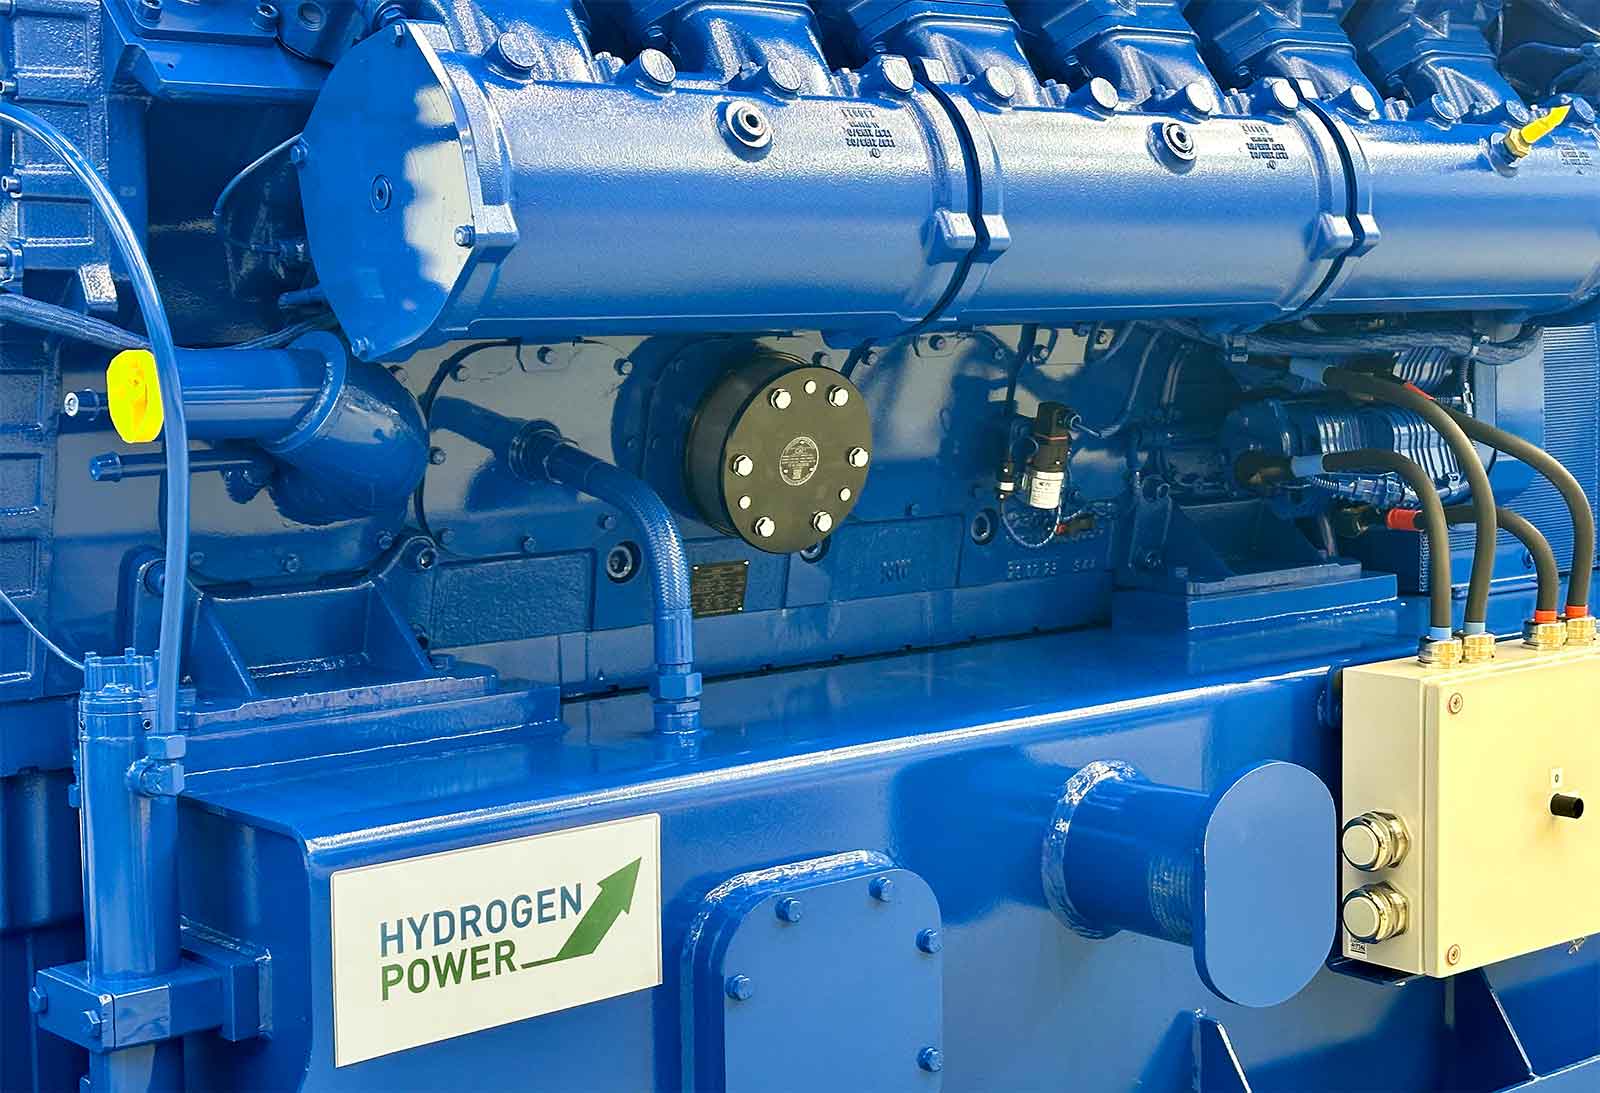 MWM Hydrogen Power with TCG 3020 Gas Engines